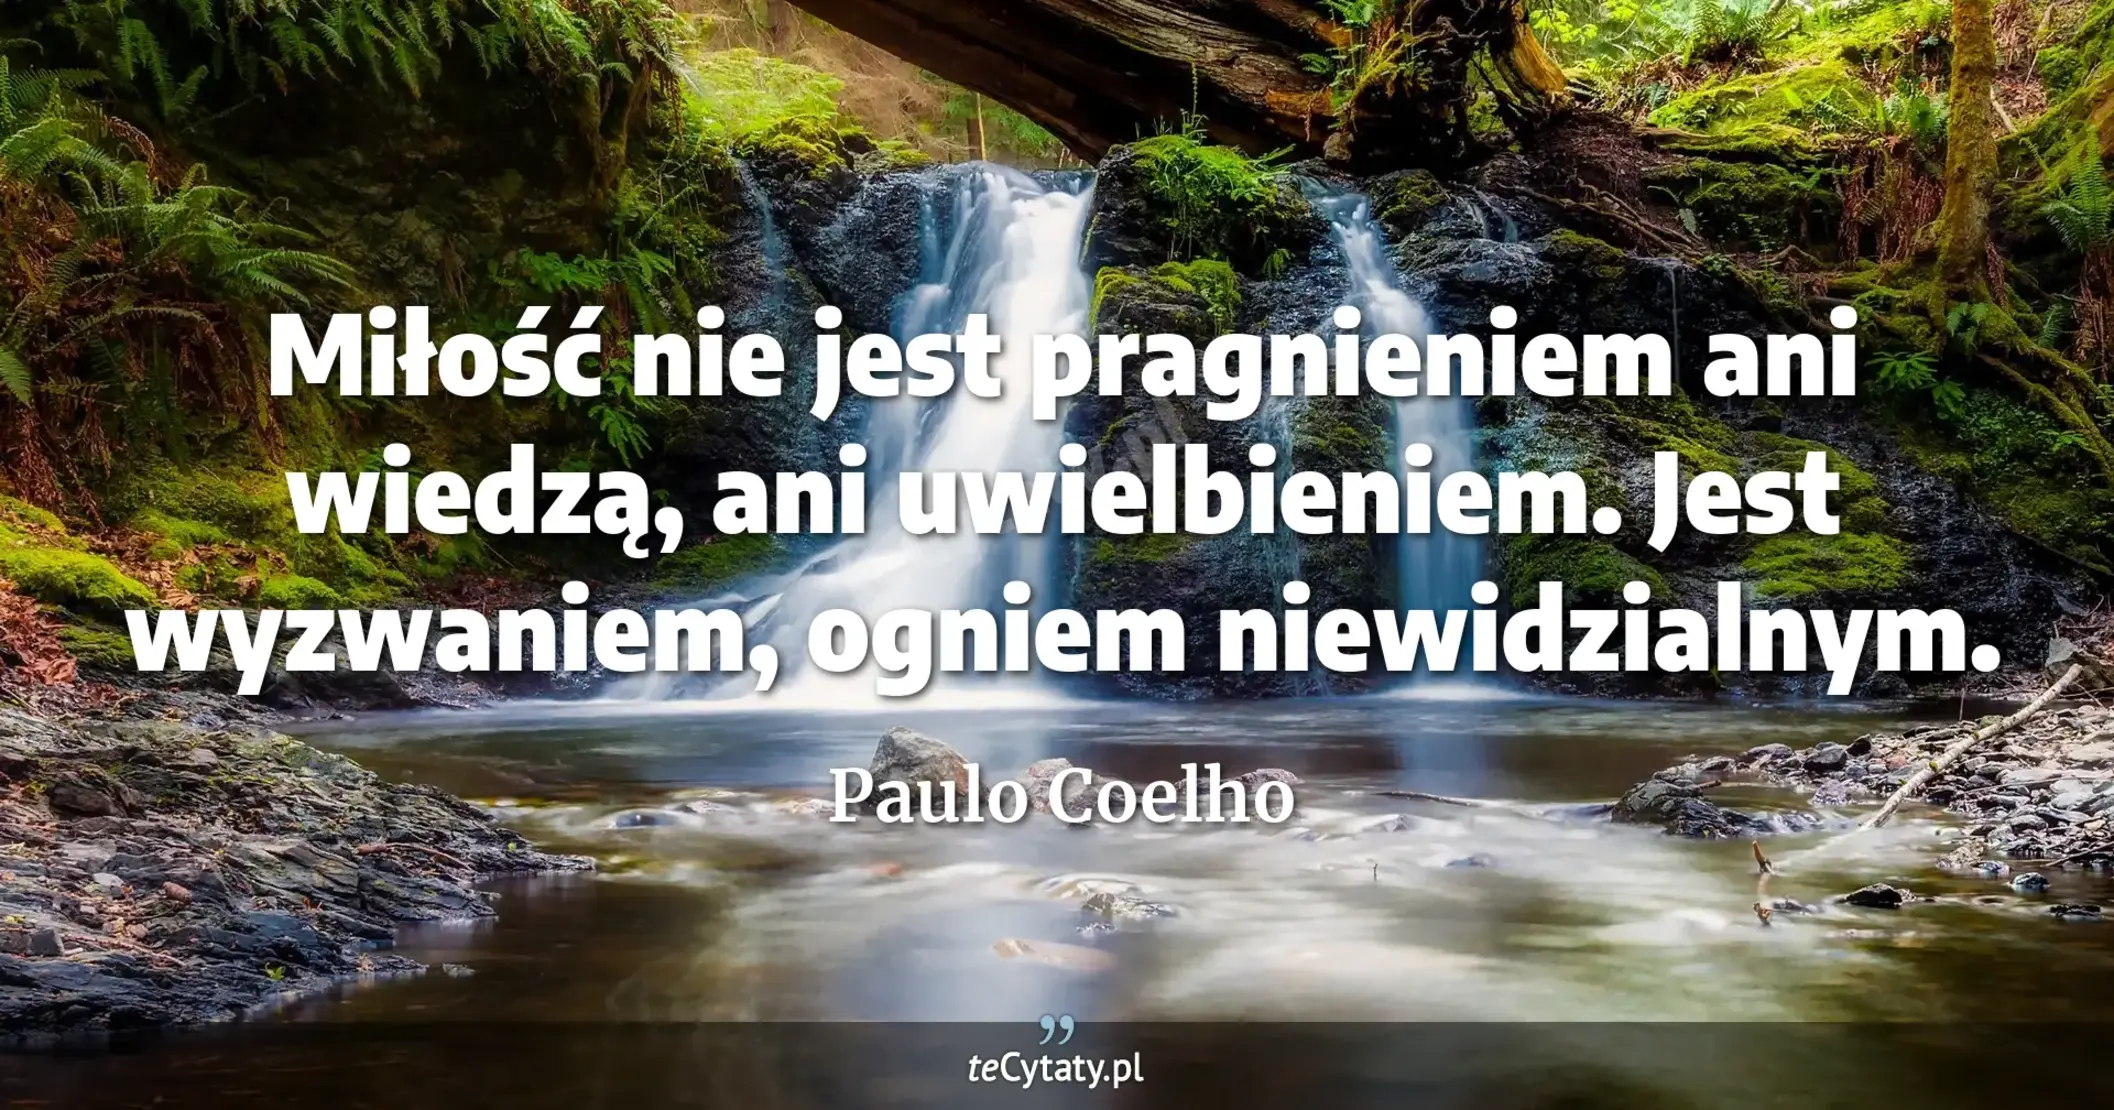 Miłość nie jest pragnieniem ani wiedzą, ani uwielbieniem. Jest wyzwaniem, ogniem niewidzialnym. - Paulo Coelho